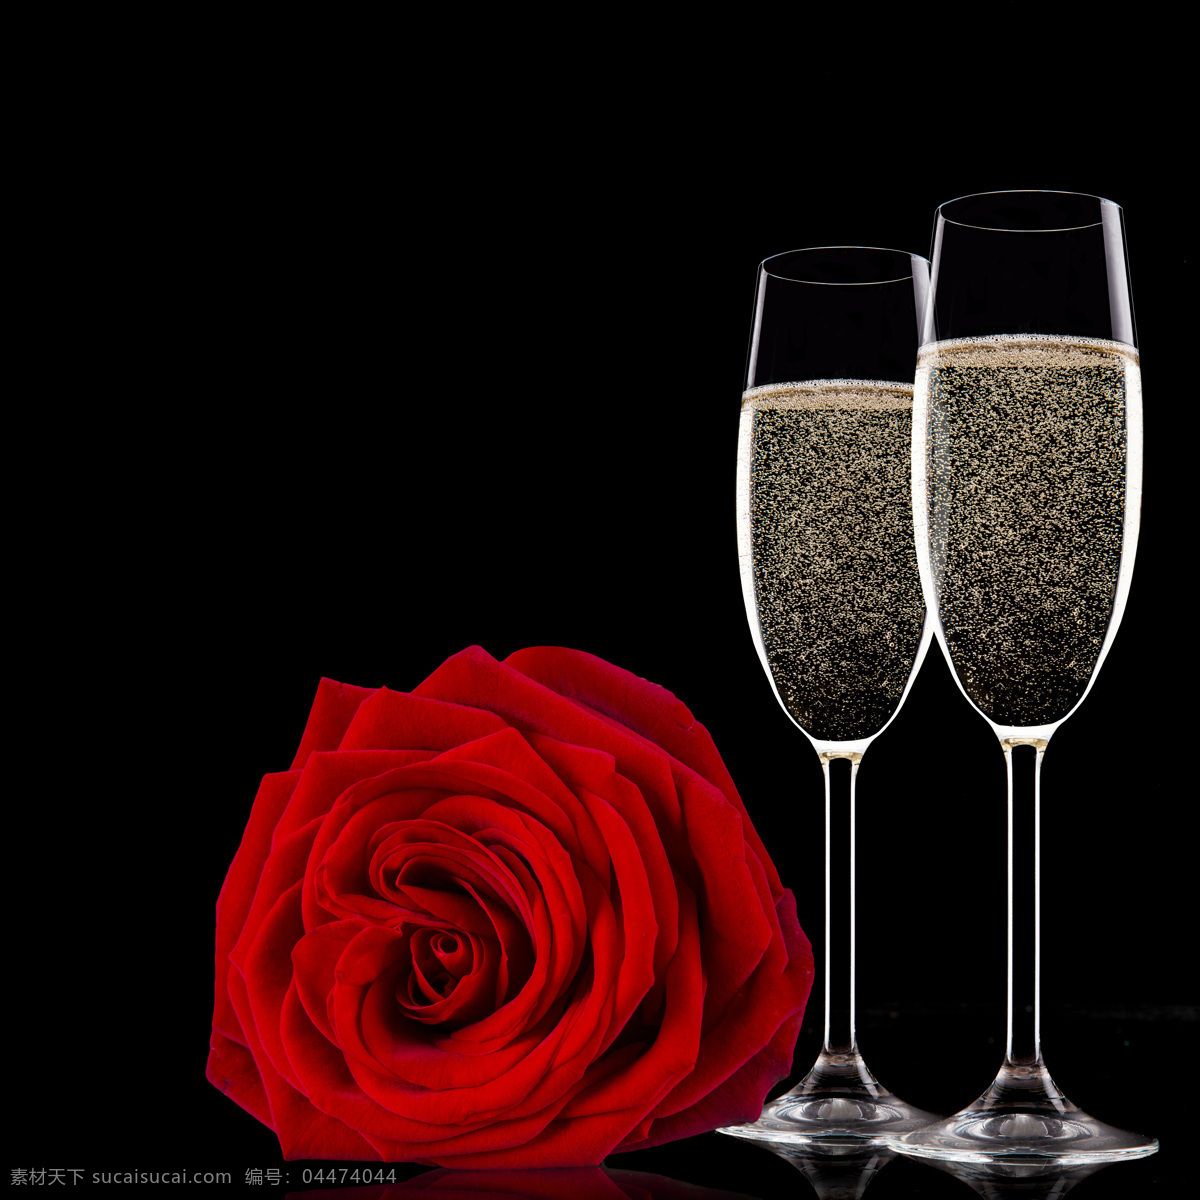 香槟 玫瑰花 鲜花 红玫瑰 火玫瑰 香槟酒 酒水 美酒 酒杯 杯子 杯具 高脚杯 花朵 花卉 酒精 酒类 生物世界 花草